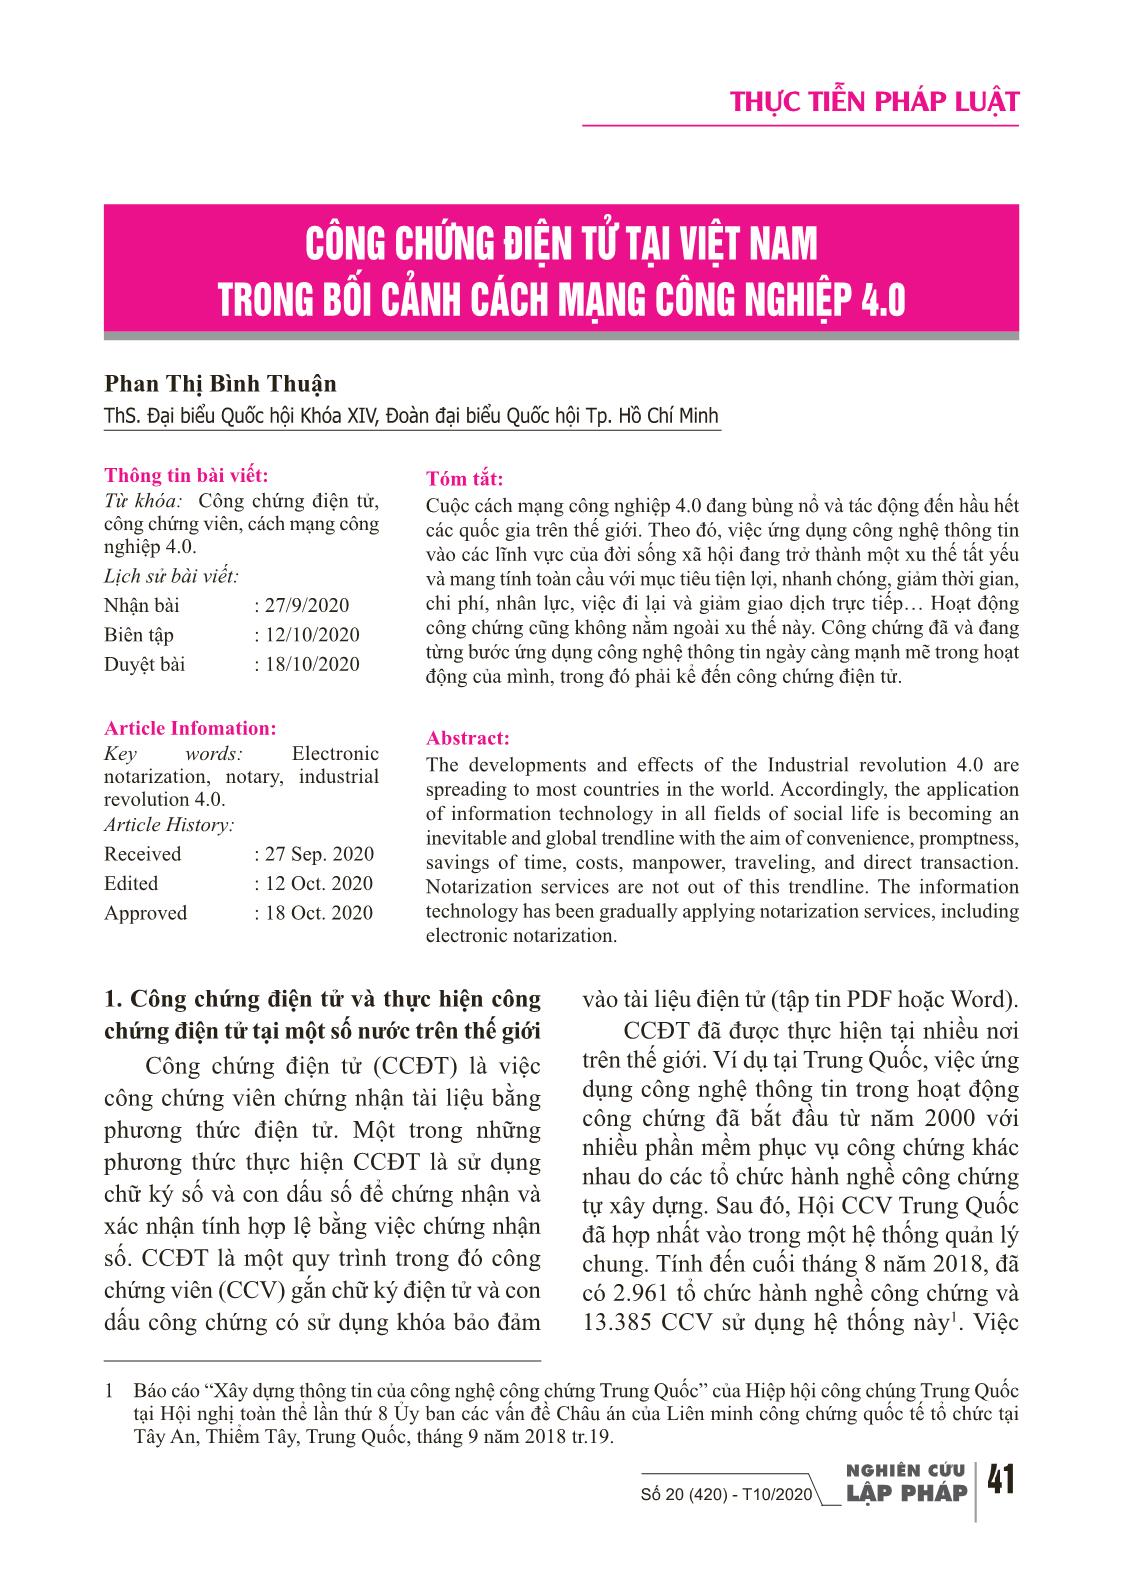 Công chứng điện tử tại Việt Nam trong bối cảnh cách mạng công nghiệp 4.0 trang 1